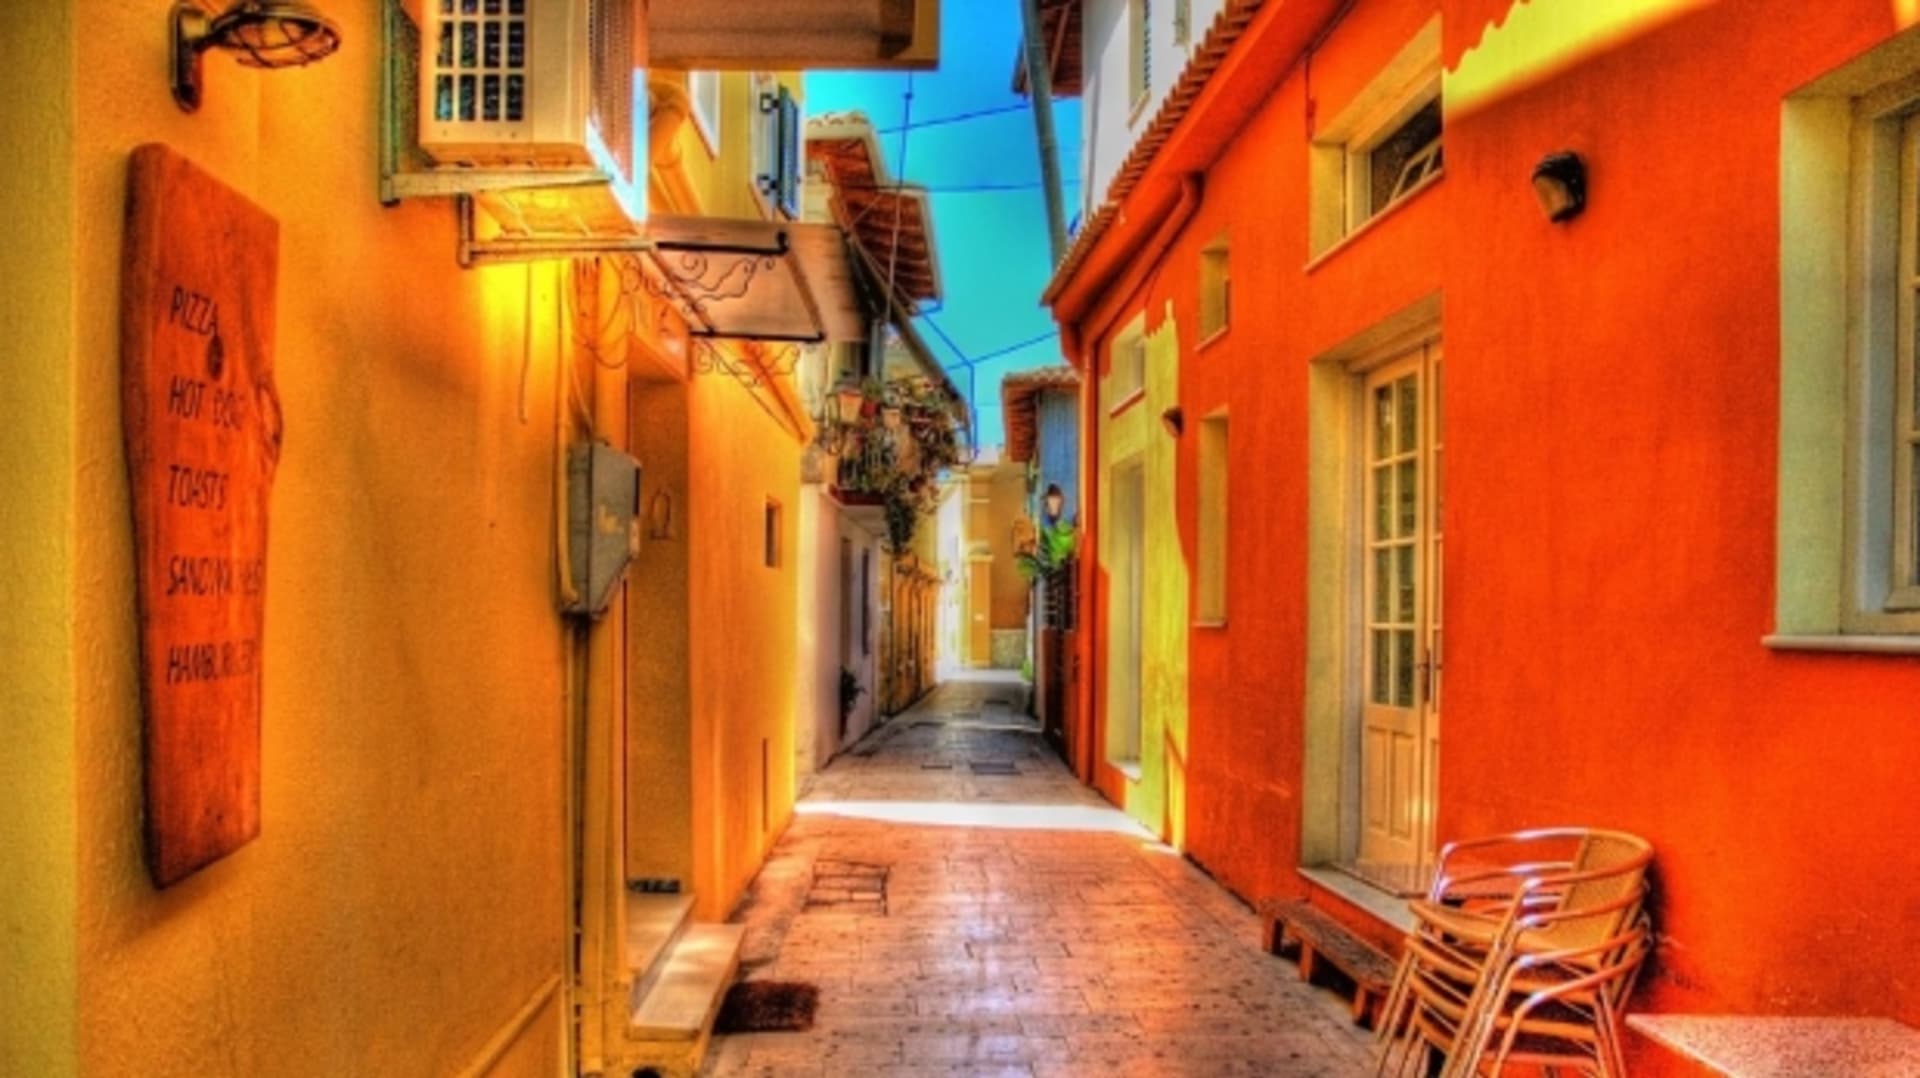 Večerní uličky v řeckých městečkách jsou romantikou doslova prosycené. FOTO: CK Alex